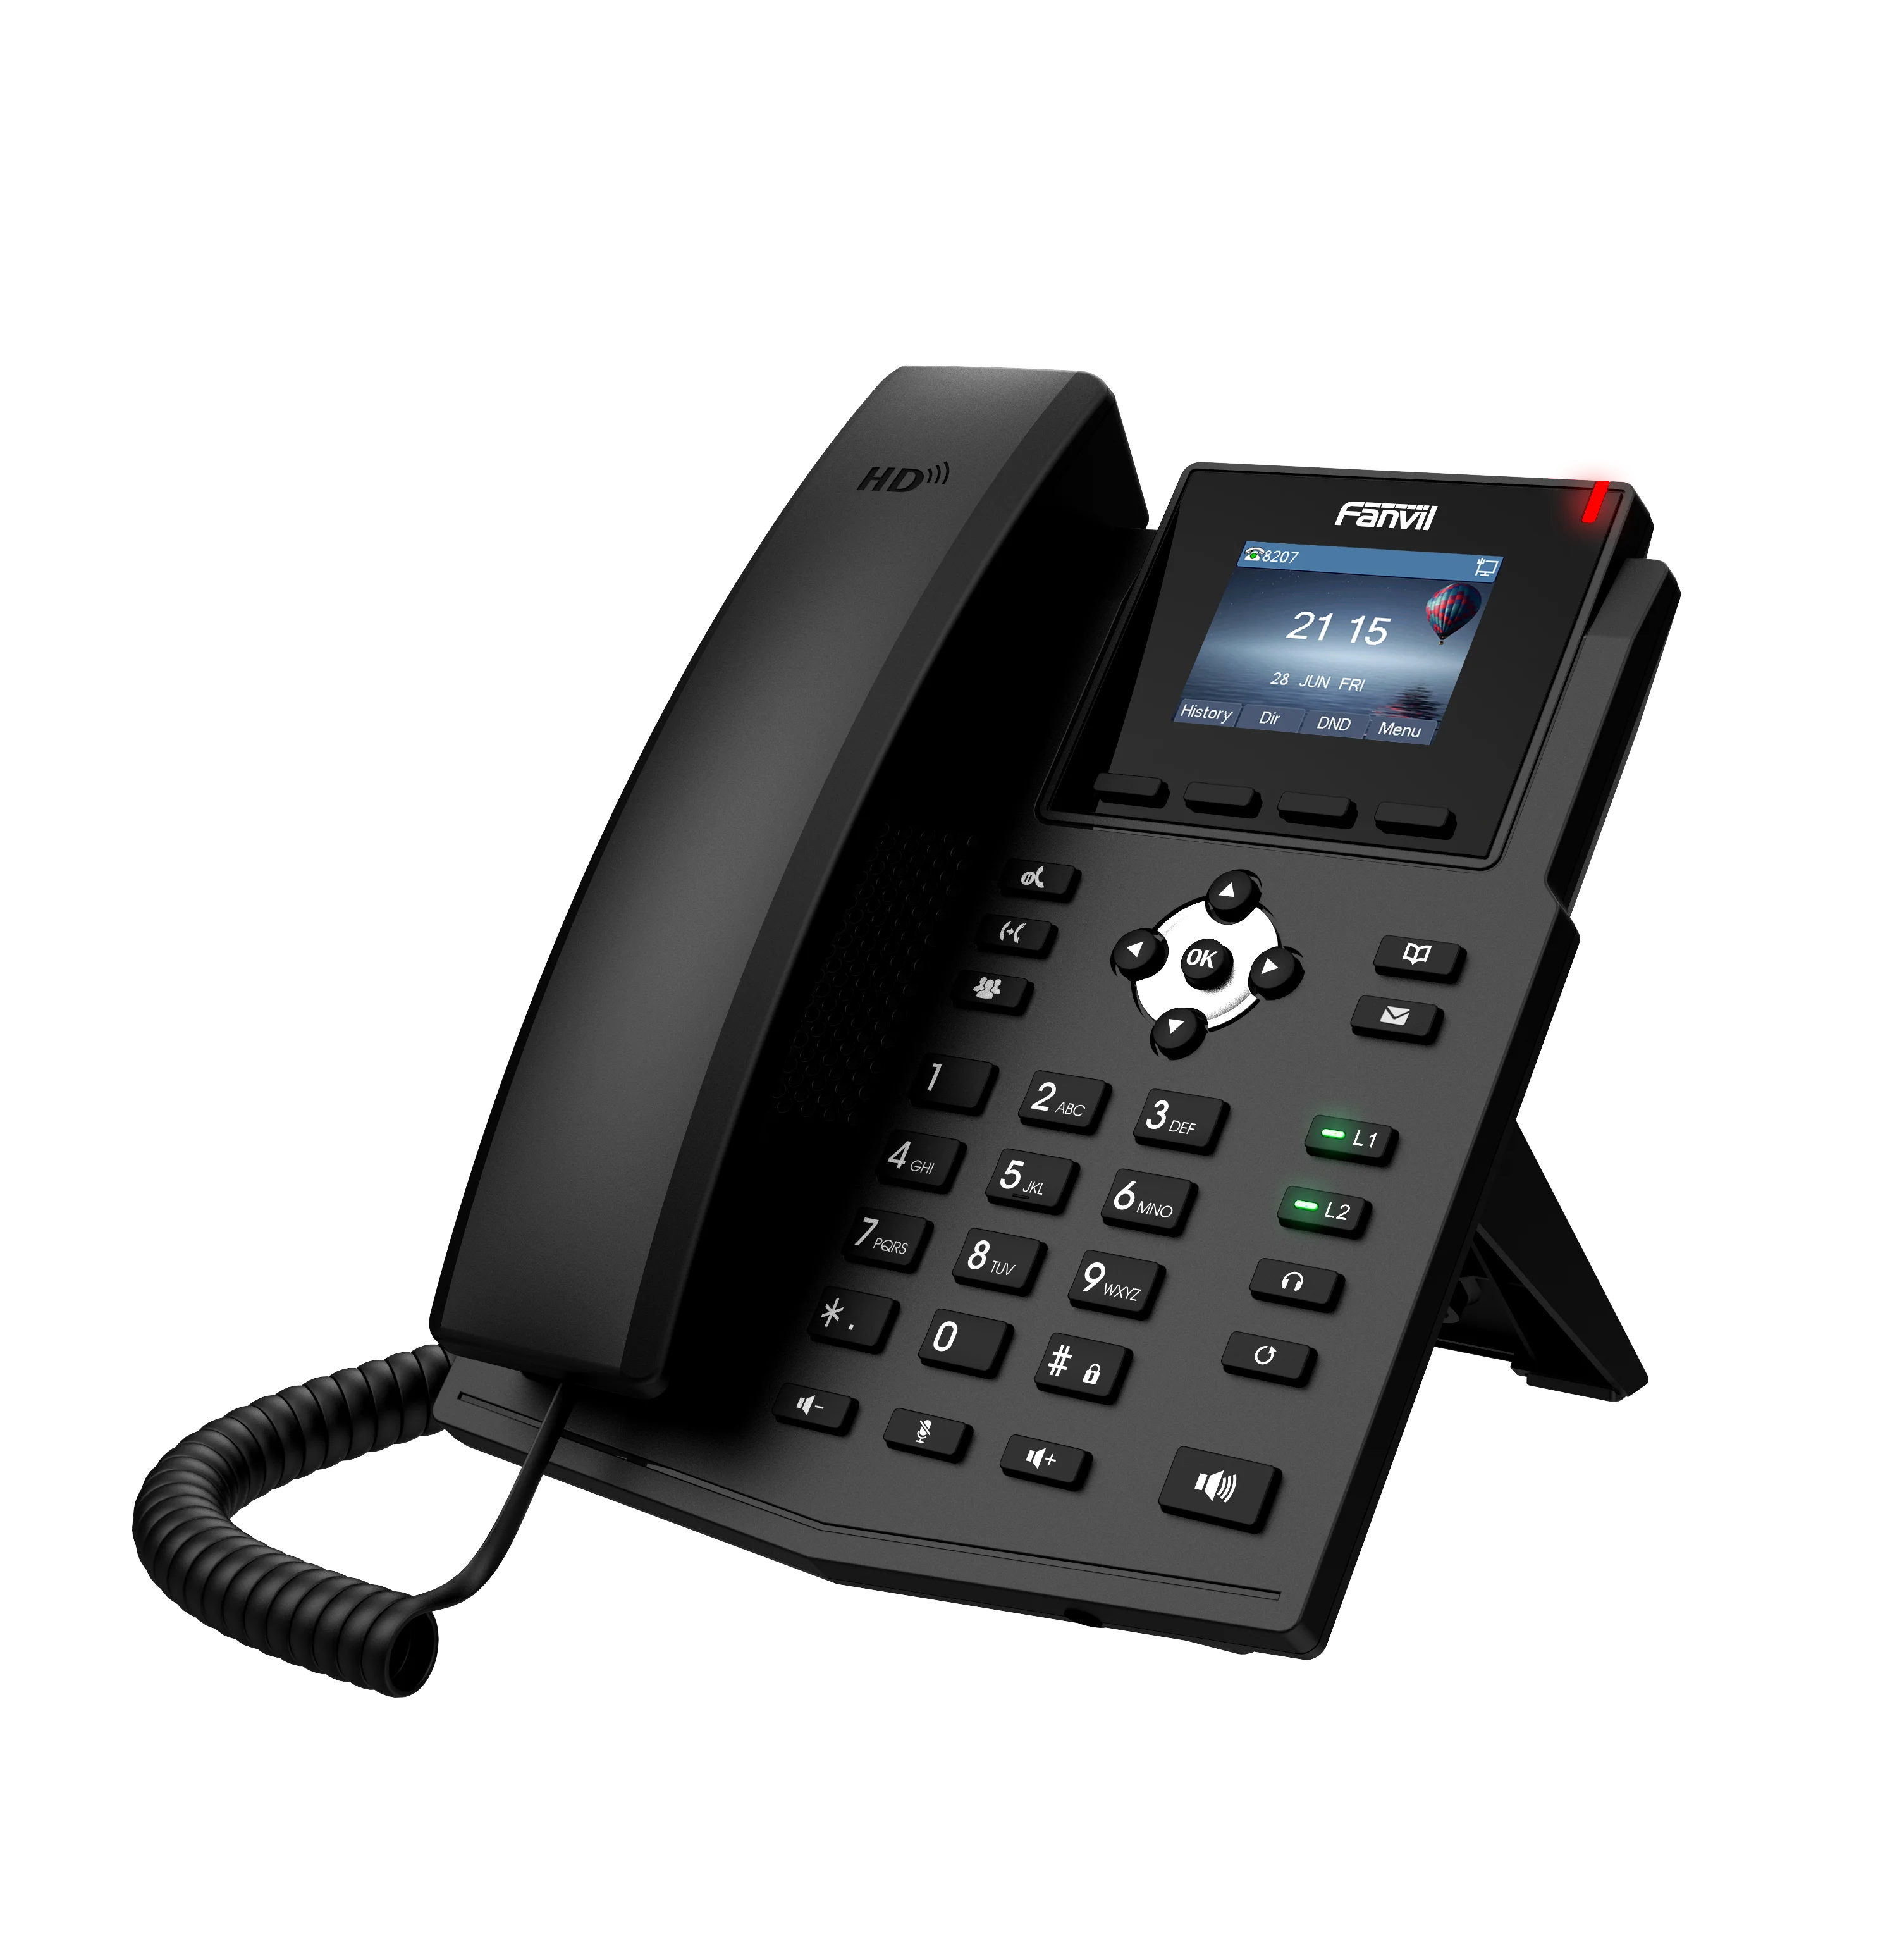 X3SP IP телефон Fanvil бренд беспроводной SIP телефон Поддержка двух VoIP ЖК-экран для учётных записей домашний бизнес офис IP телефон